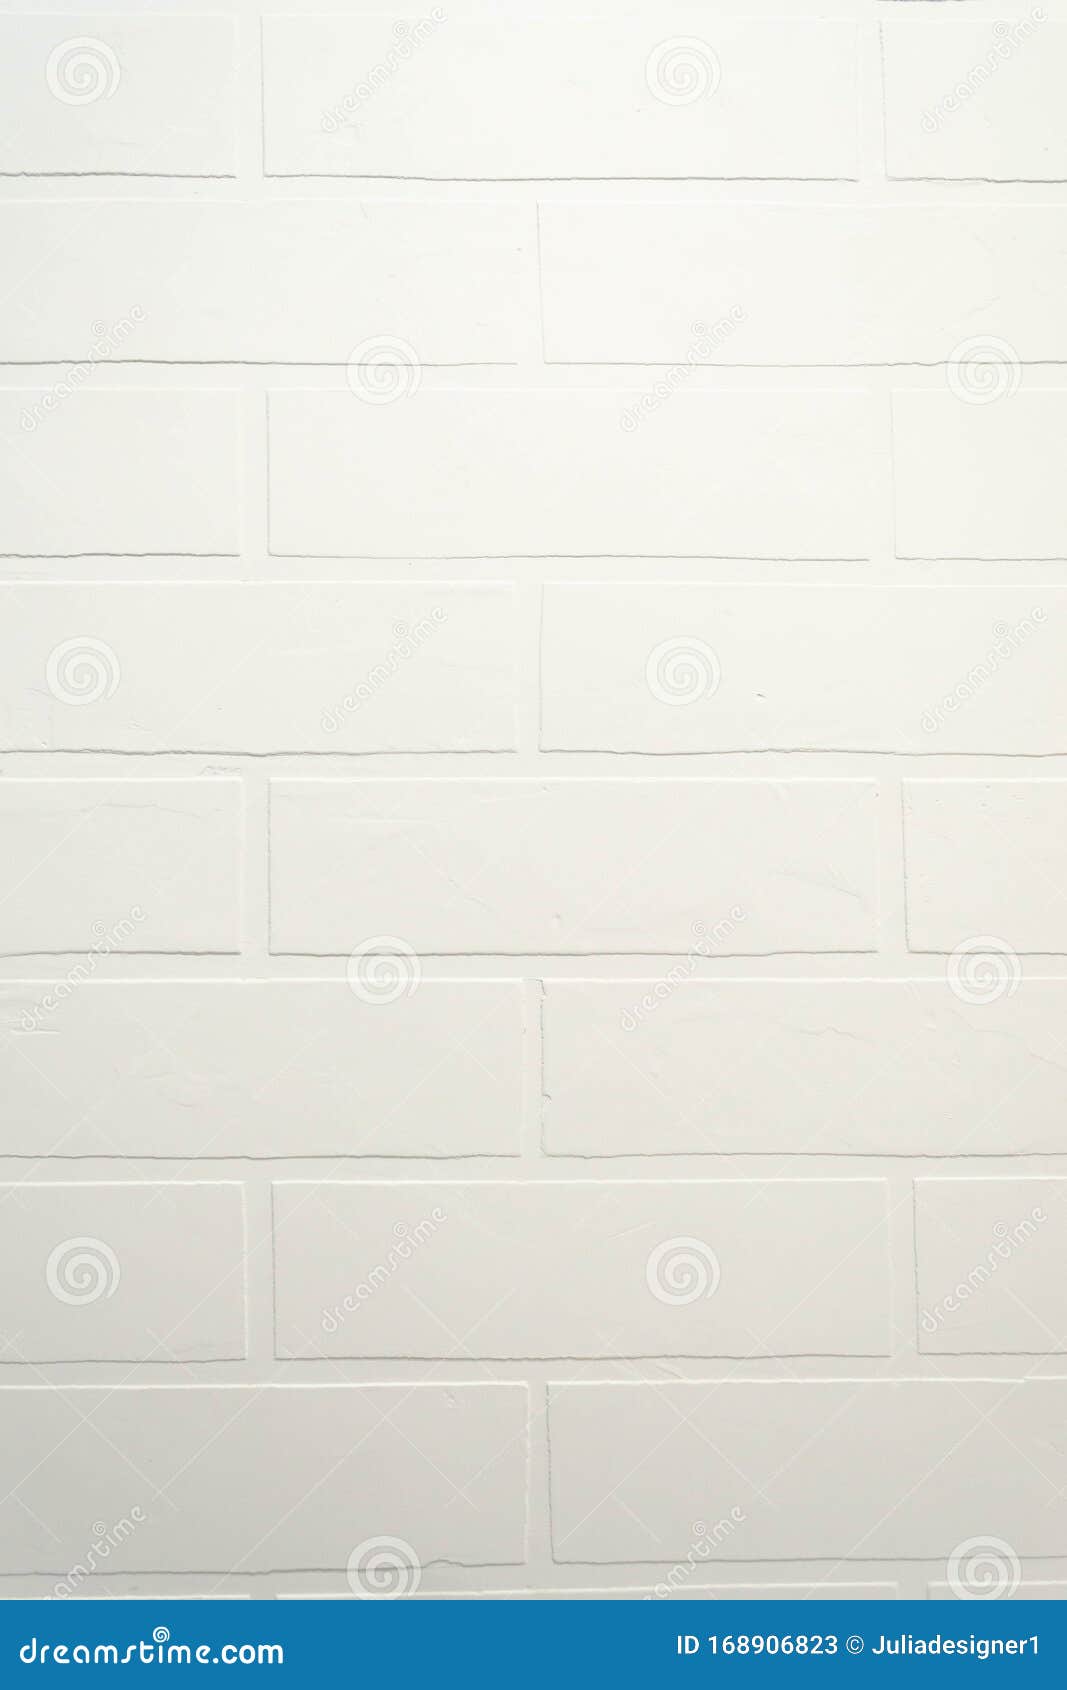 白砖墙背景近现代室内垂直壁纸手工制作diy修复墙面腻子 油漆库存图片 图片包括有格朗基 拱道